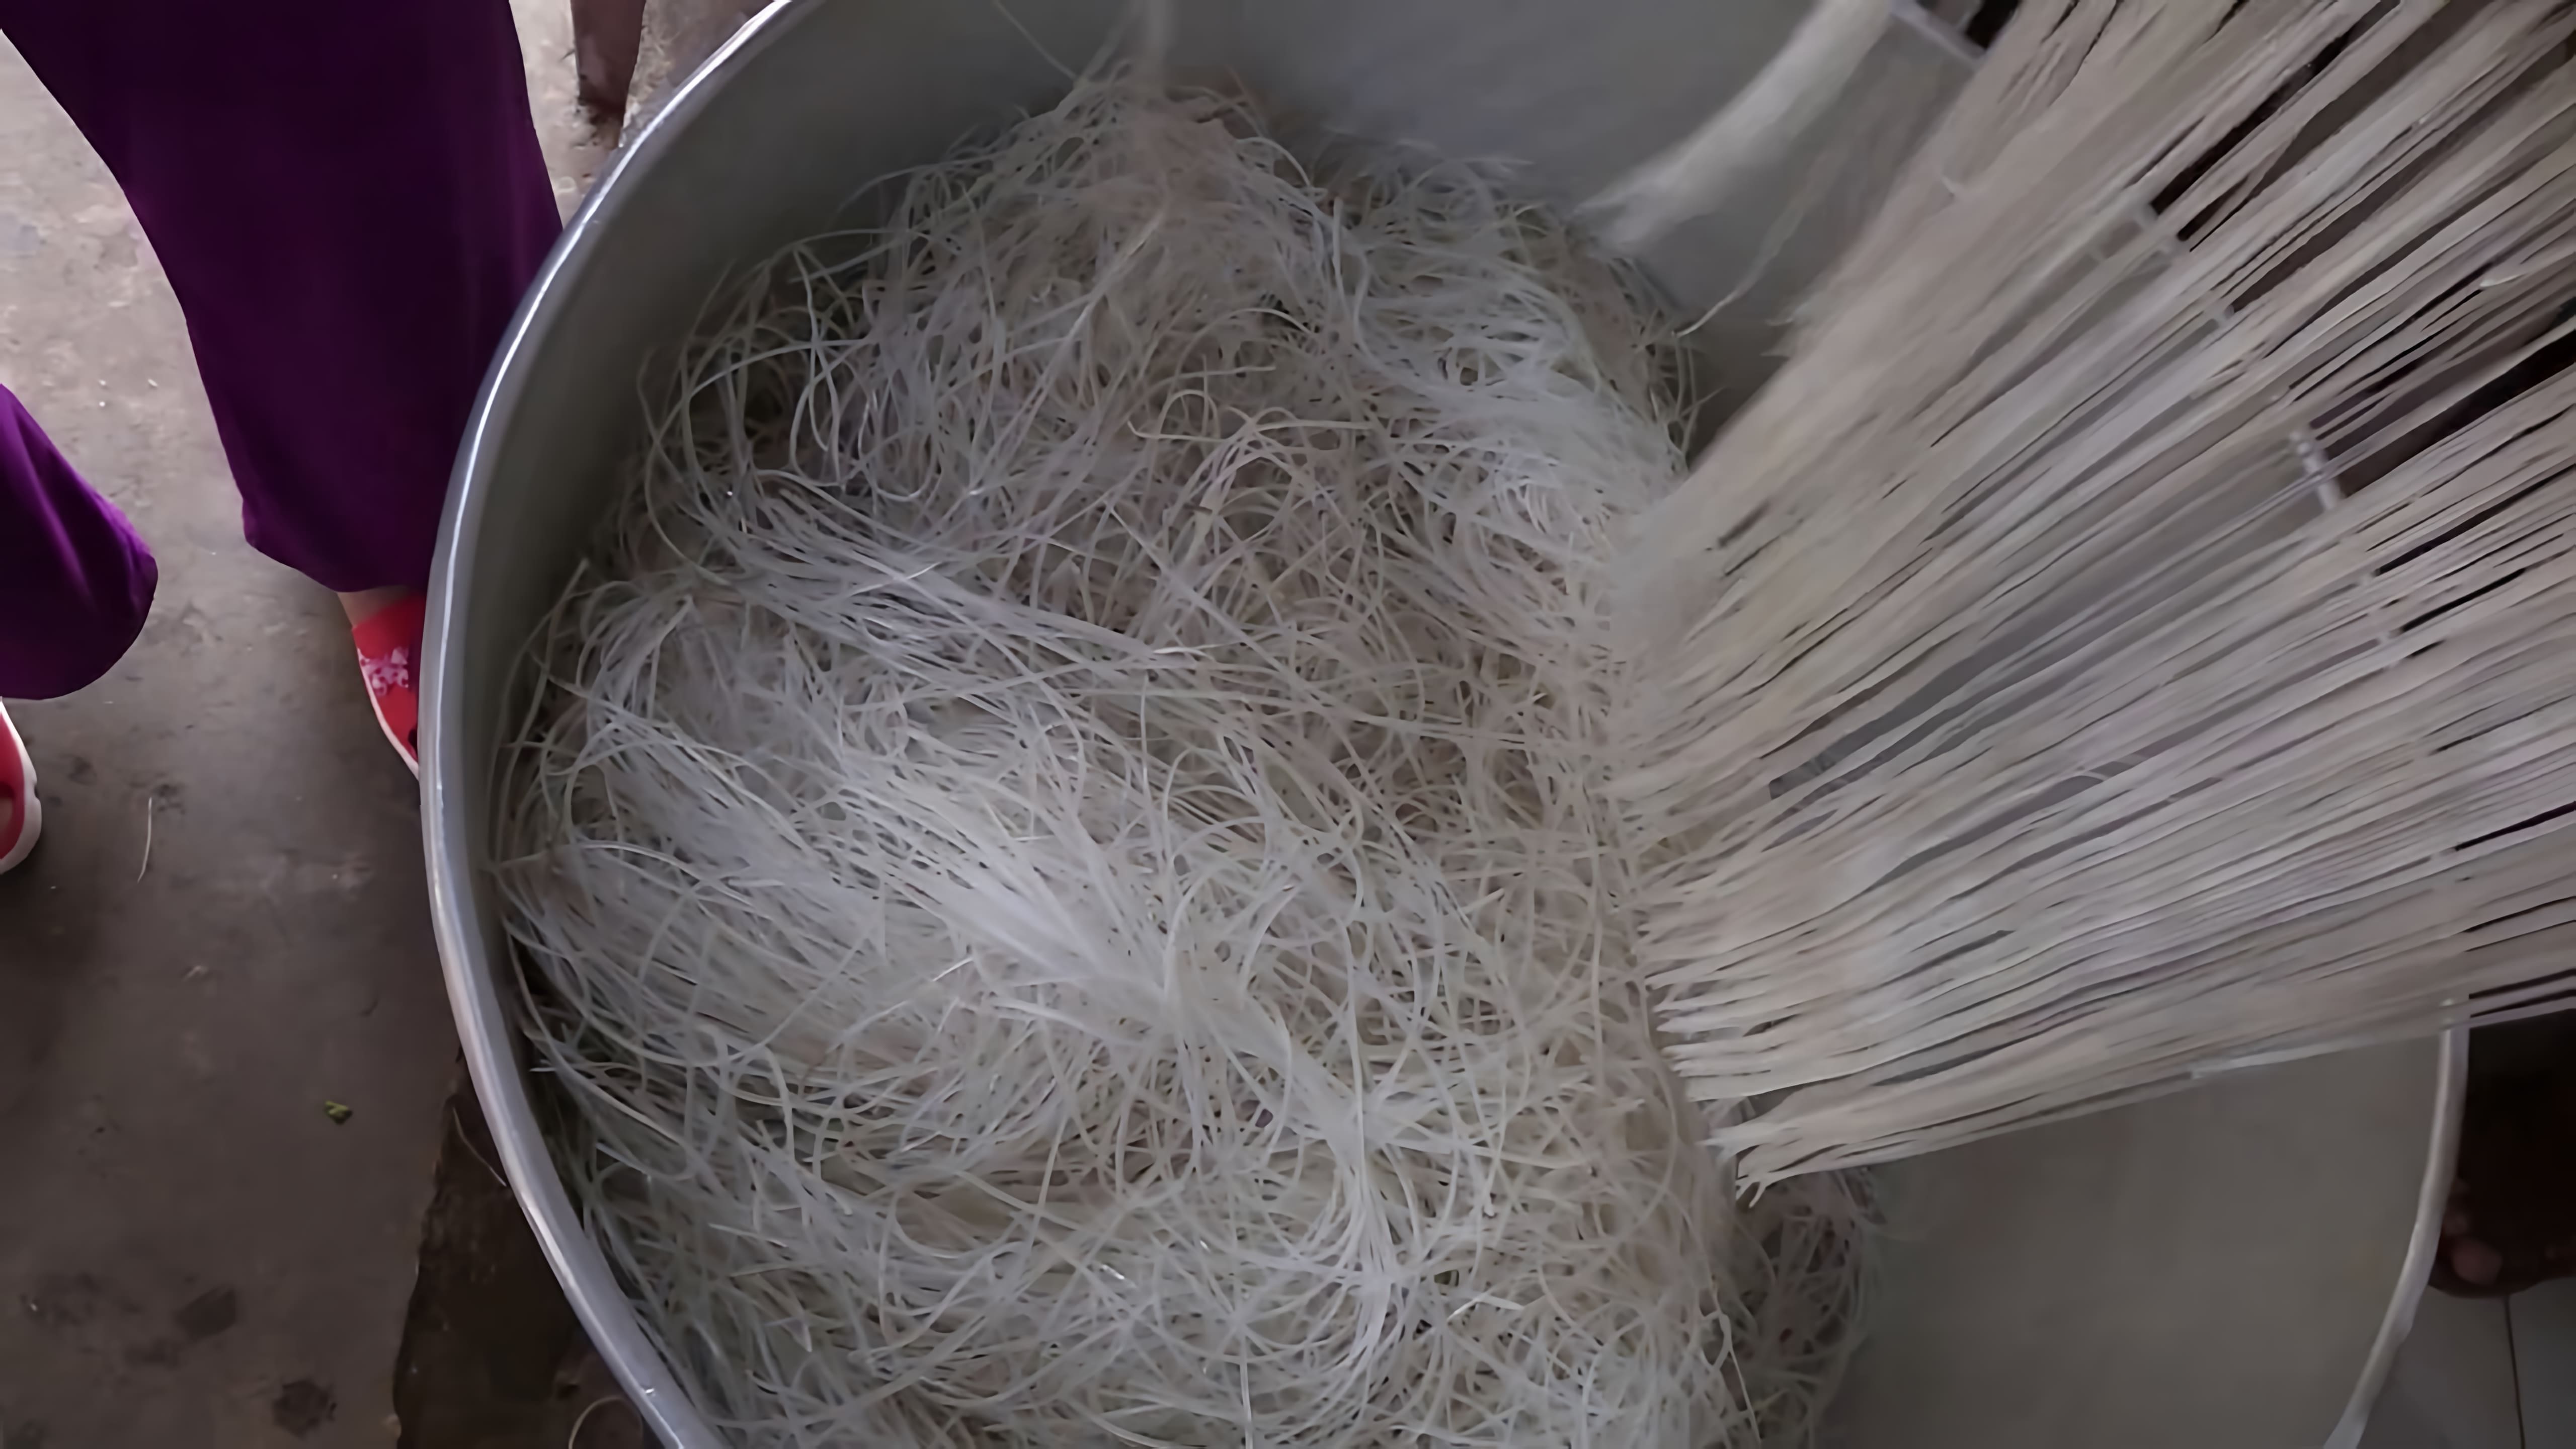 В этом видео демонстрируется процесс изготовления рисовой лапши в городе My Tho, Вьетнам